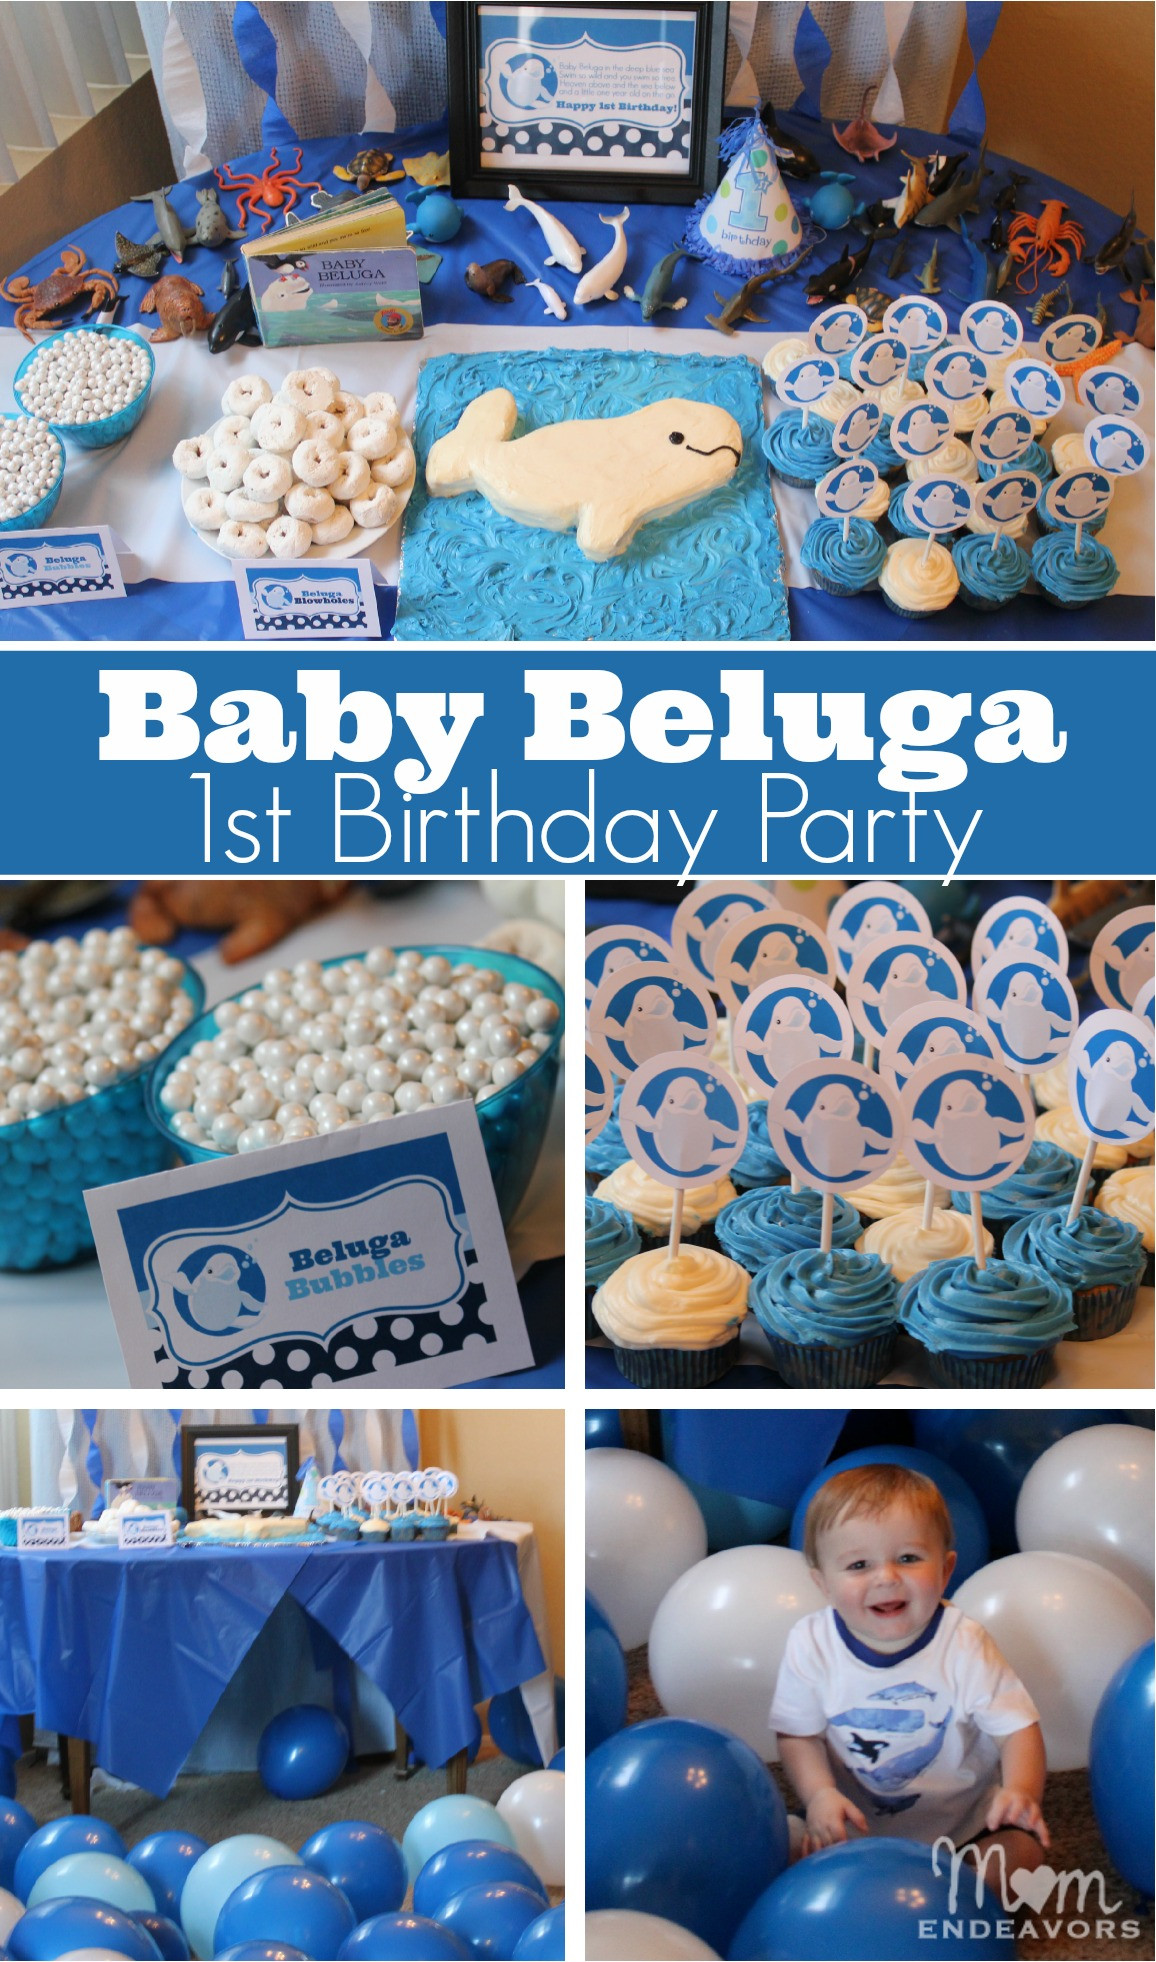 Babys 1St Birthday Party Ideas
 Baby Beluga 1st Birthday Party